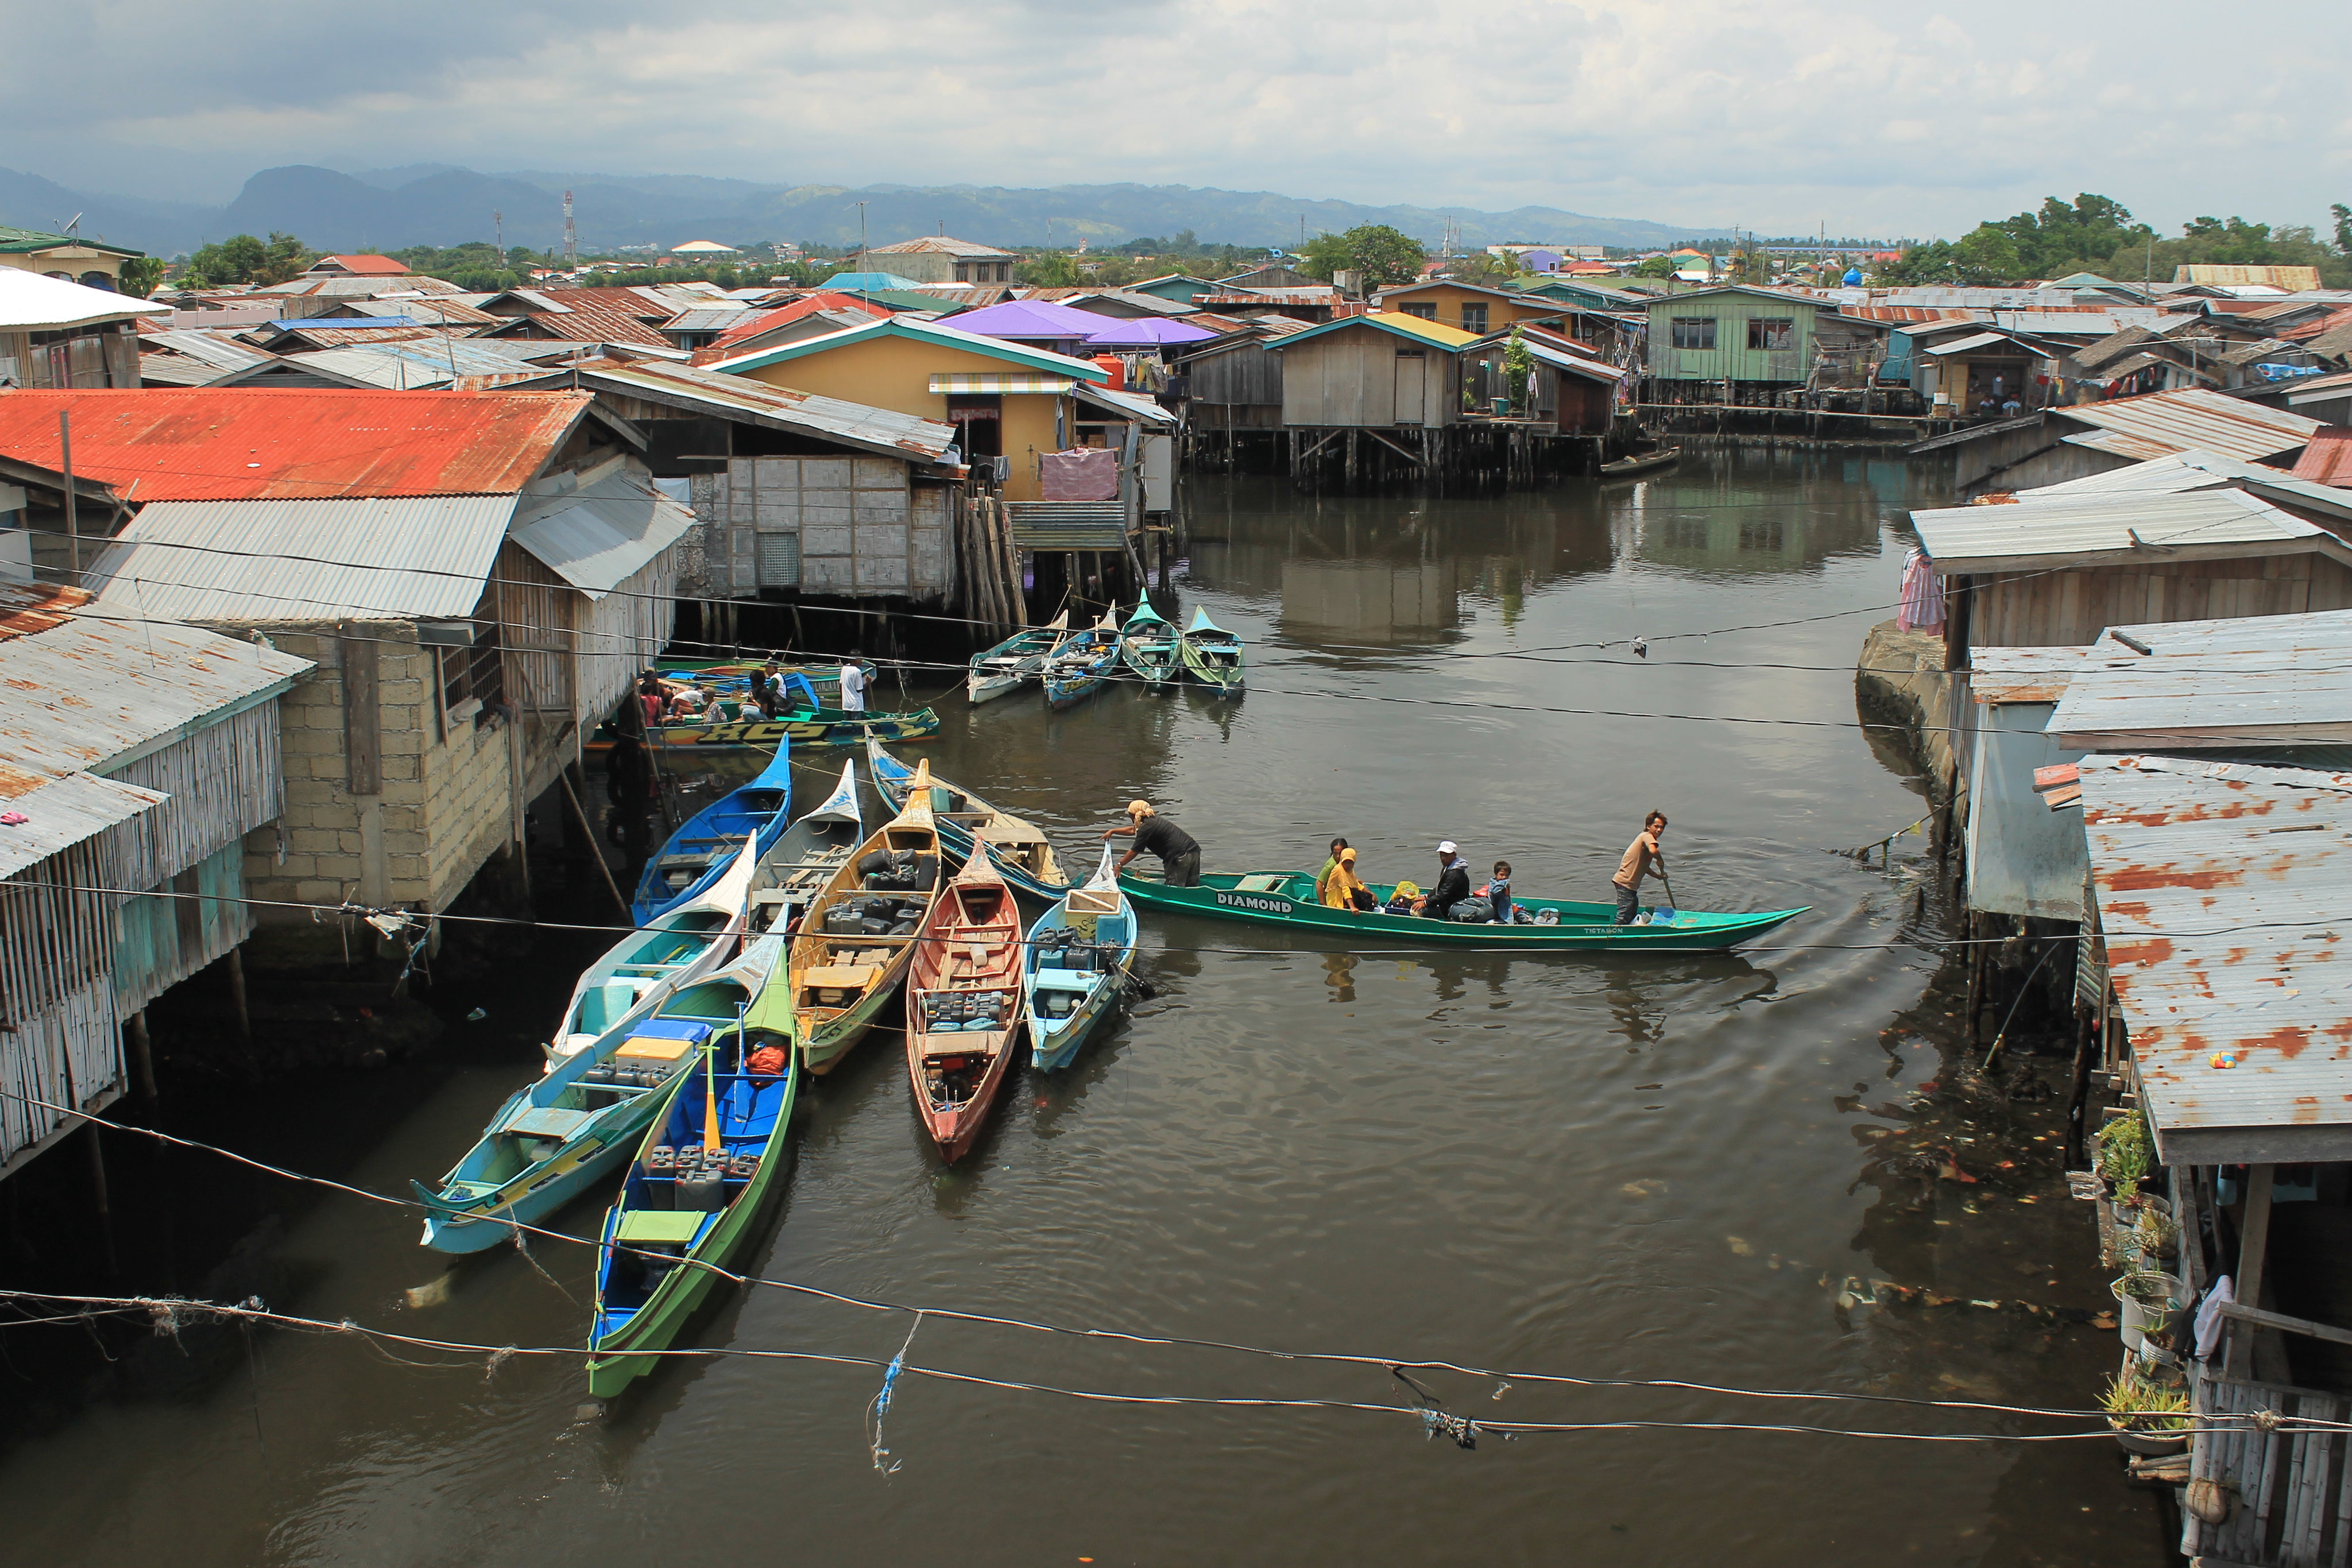 Rio Hondo, Zamboanga